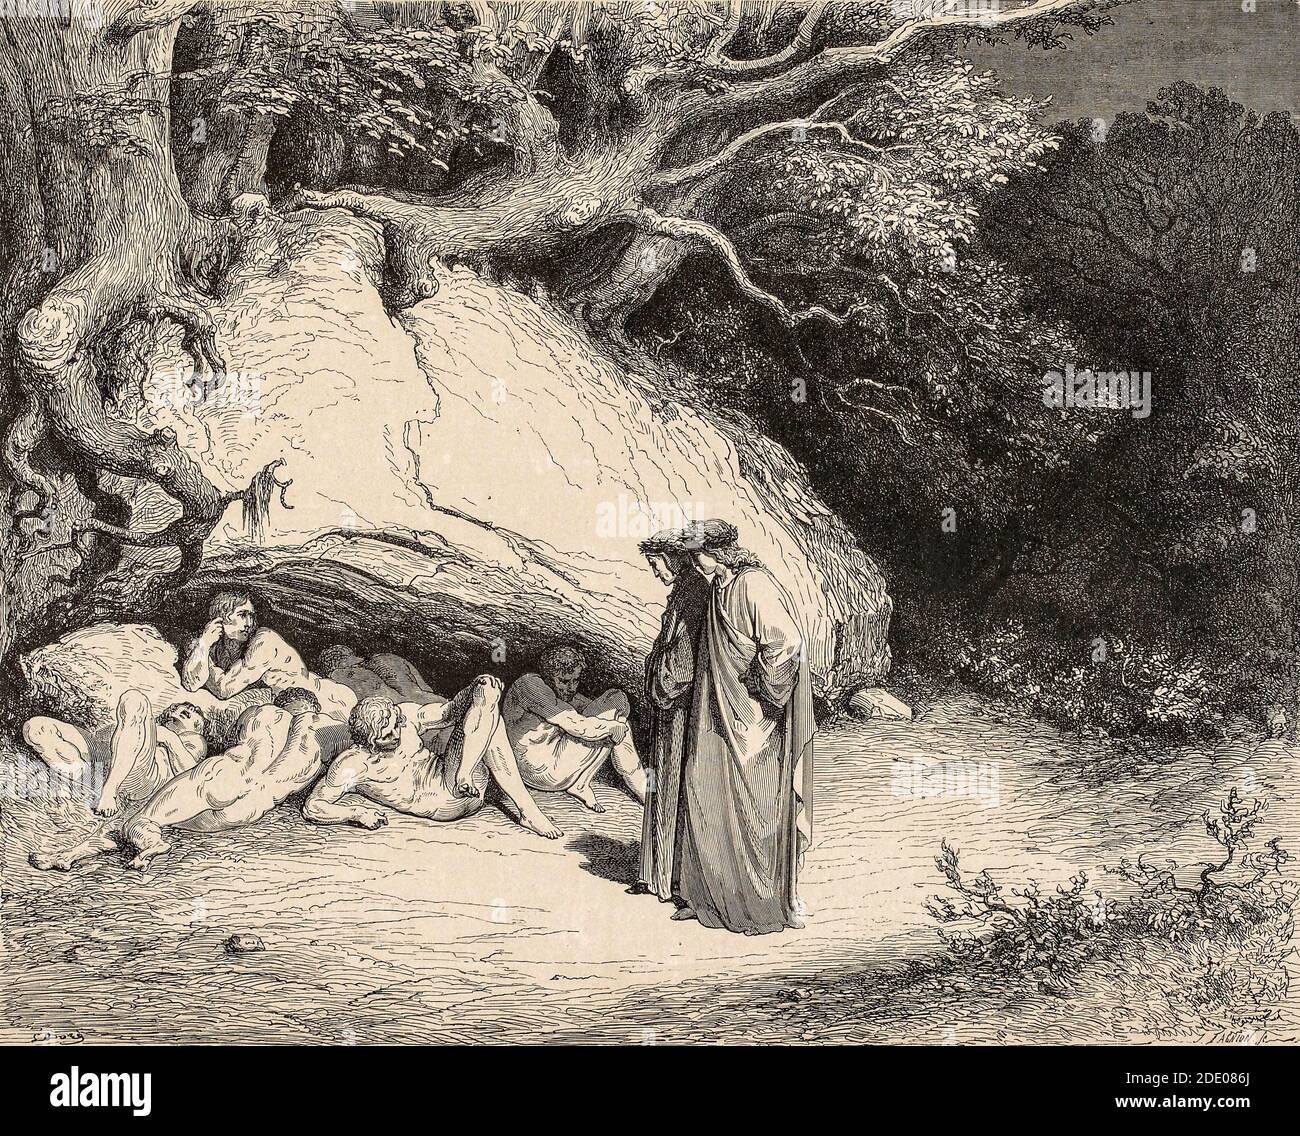 Dante Divina Commedia - Infierno - Dante se encuentra con las almas De los no bautizados - ilustración de Gustave Dorè Foto de stock